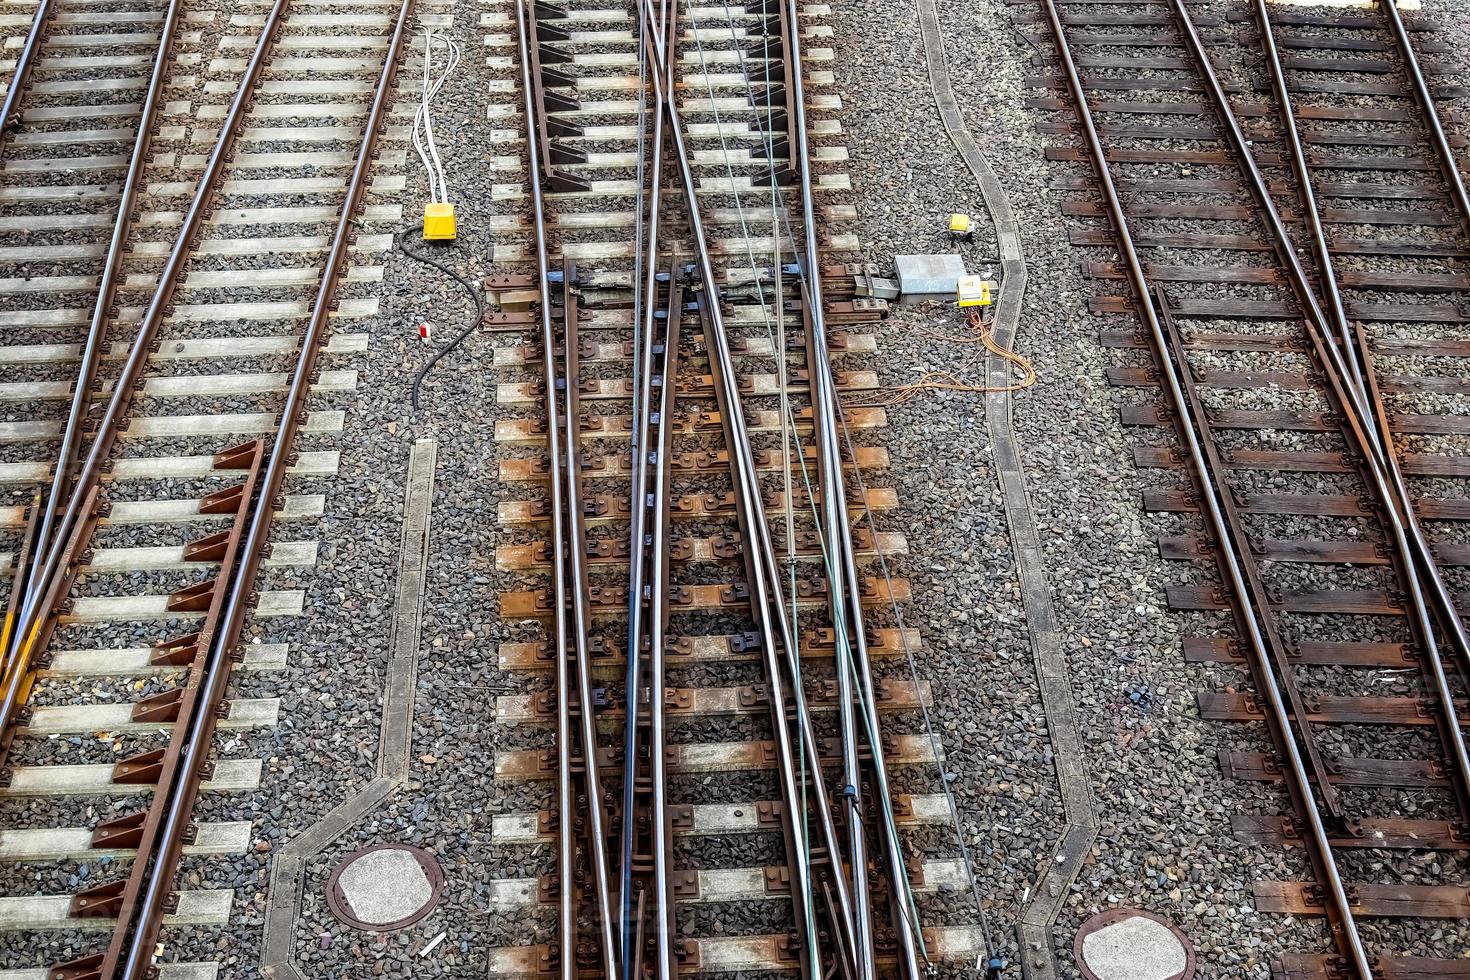 flera olika järnväg spår med korsningar på en järnväg station i en perspektiv och fåglar se foto